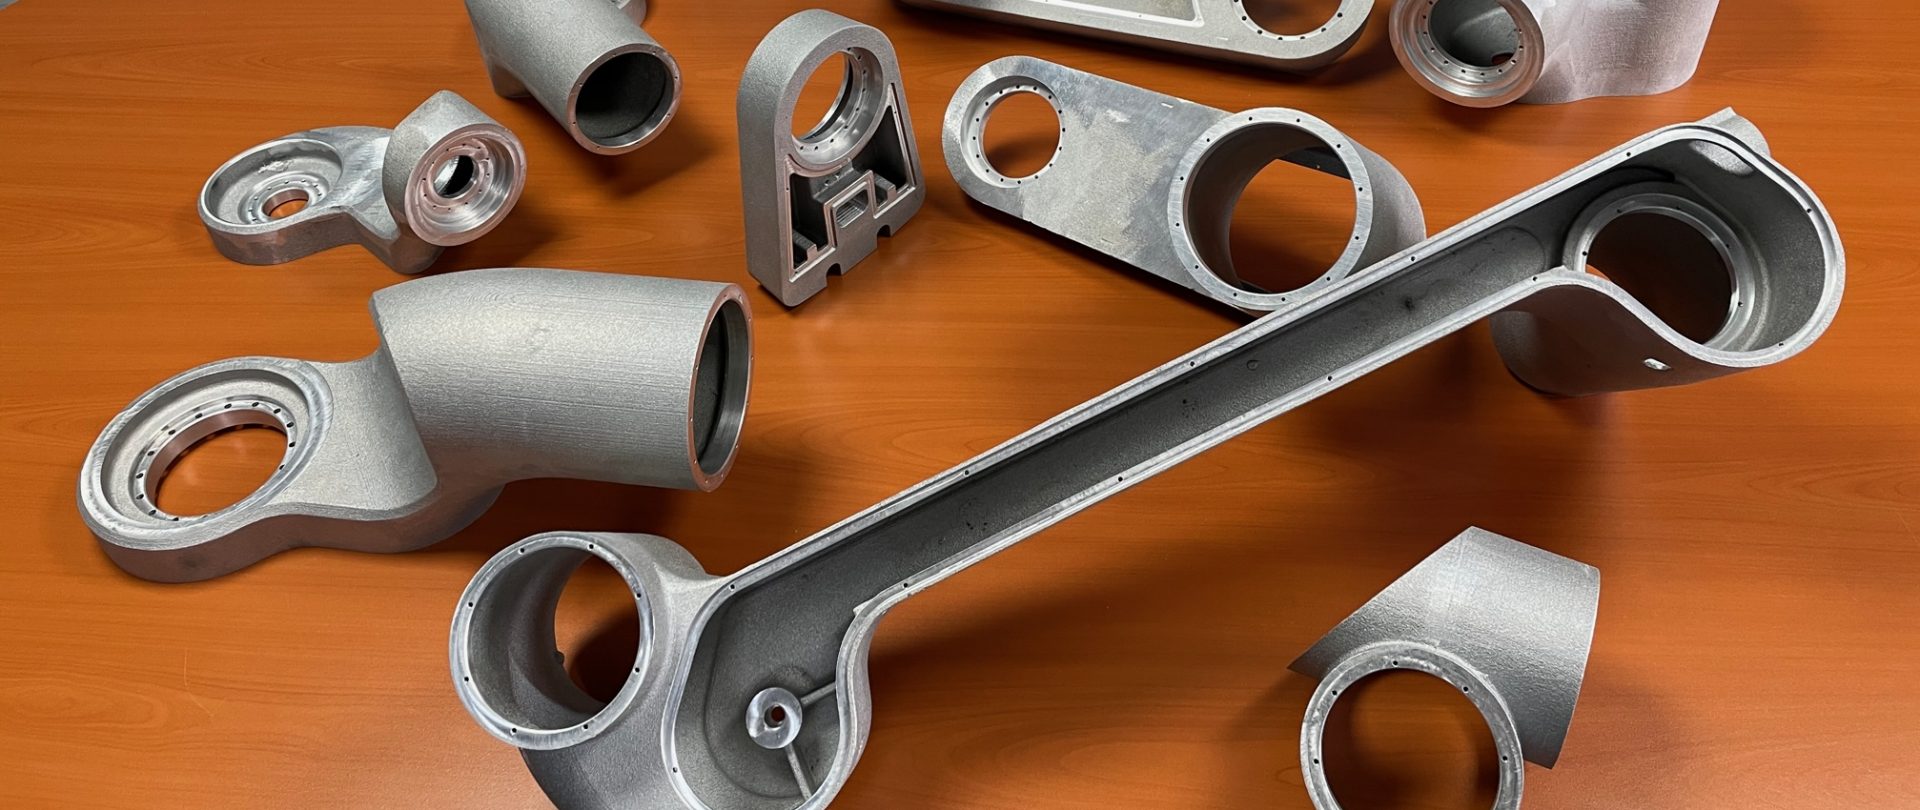 Lire la suite à propos de l’article Prototypage en aluminium : Les Prototypes de Fonderie Redéfinissent la Fabrication